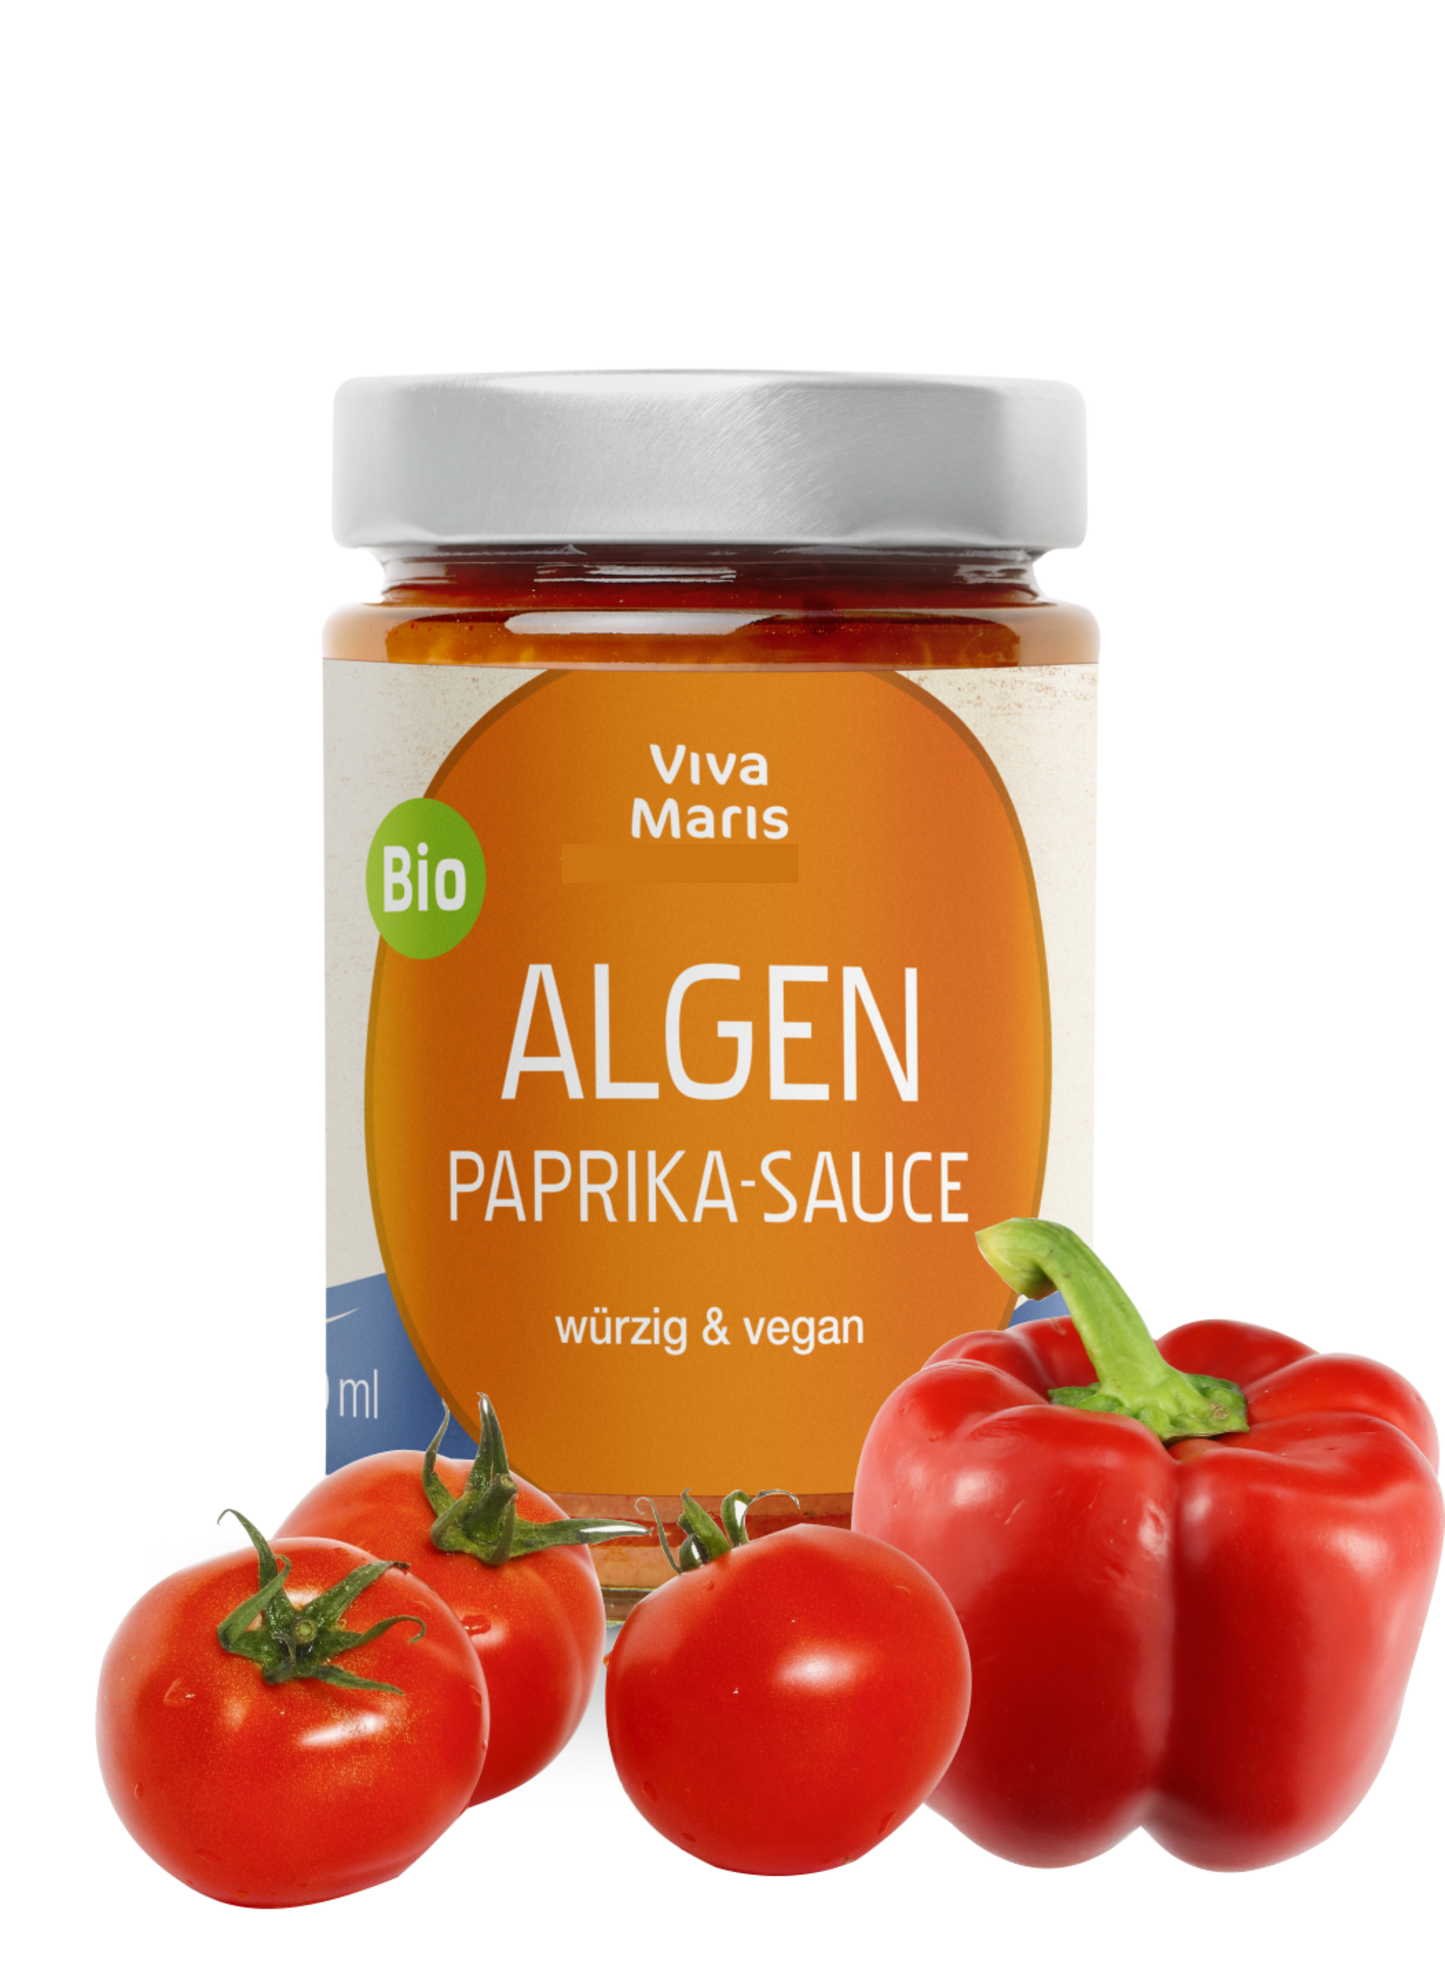 Vorteils-Set 2x die pikante Bio Algen Paprika Sauce á 300ml + 1x Bio Algen Pasta 500g